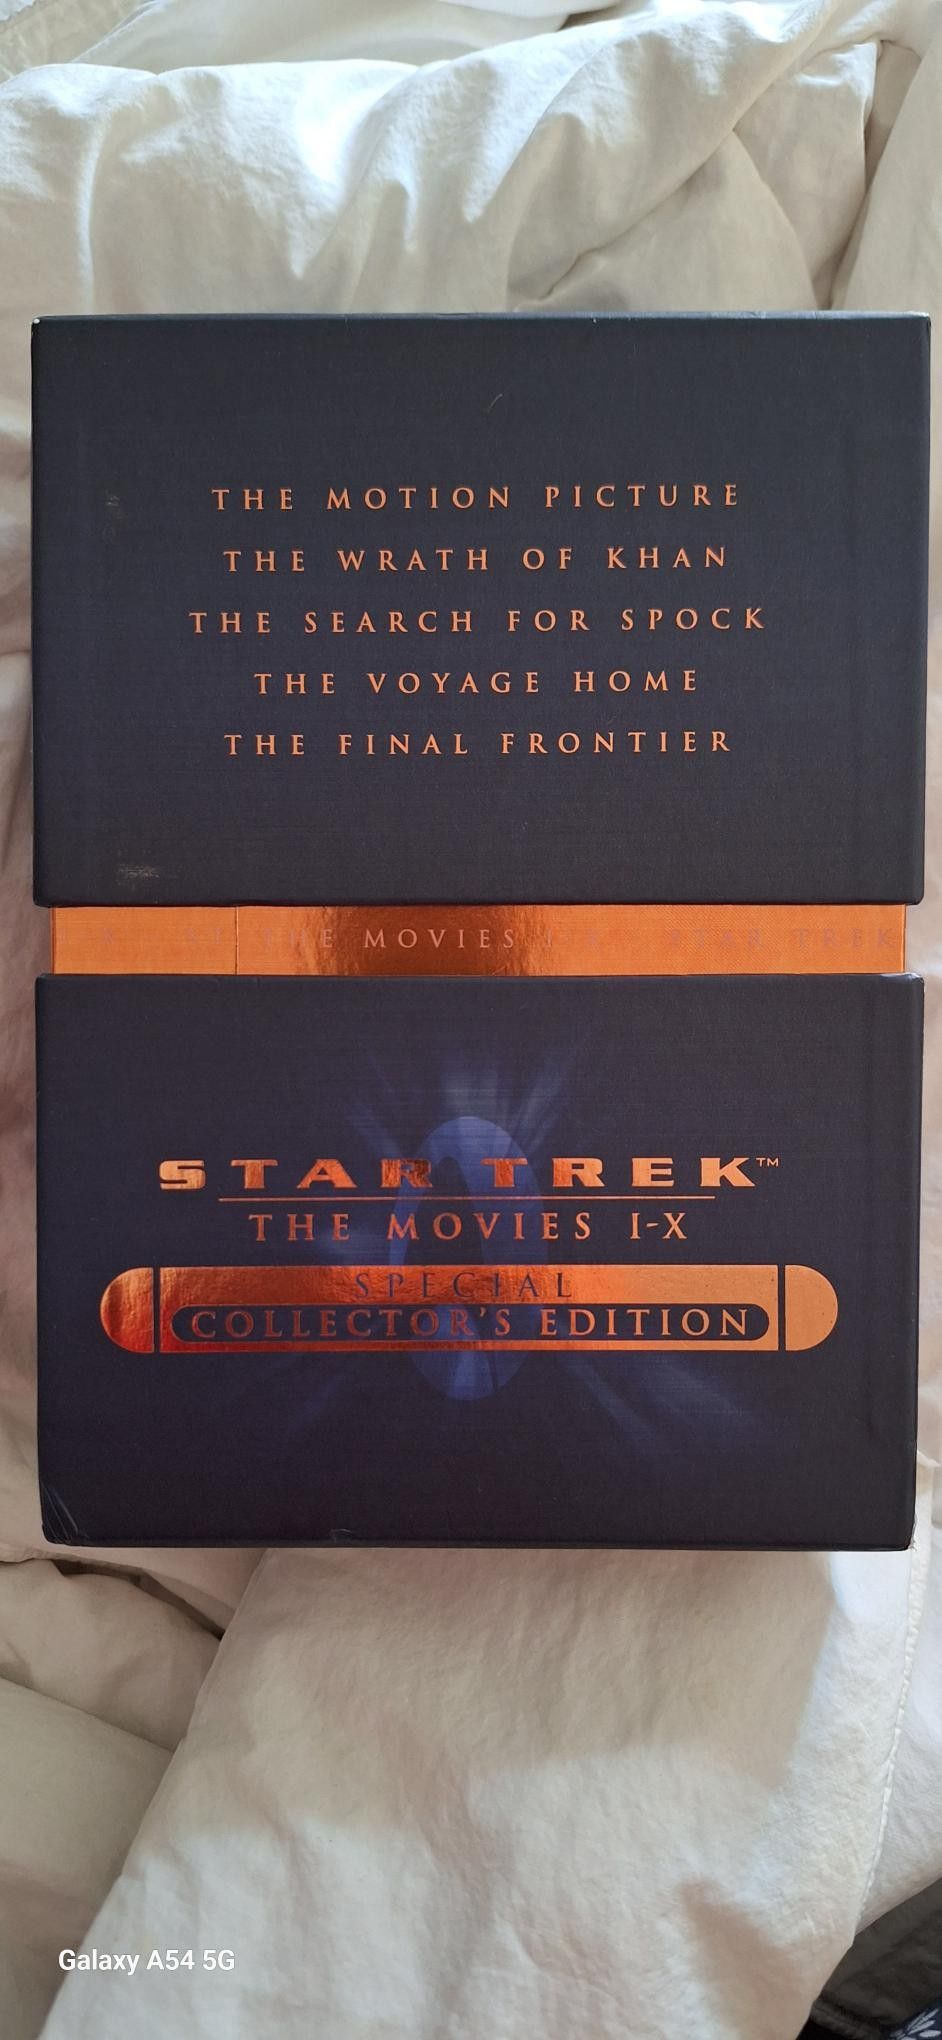 STAR TREK - Special collectors edition